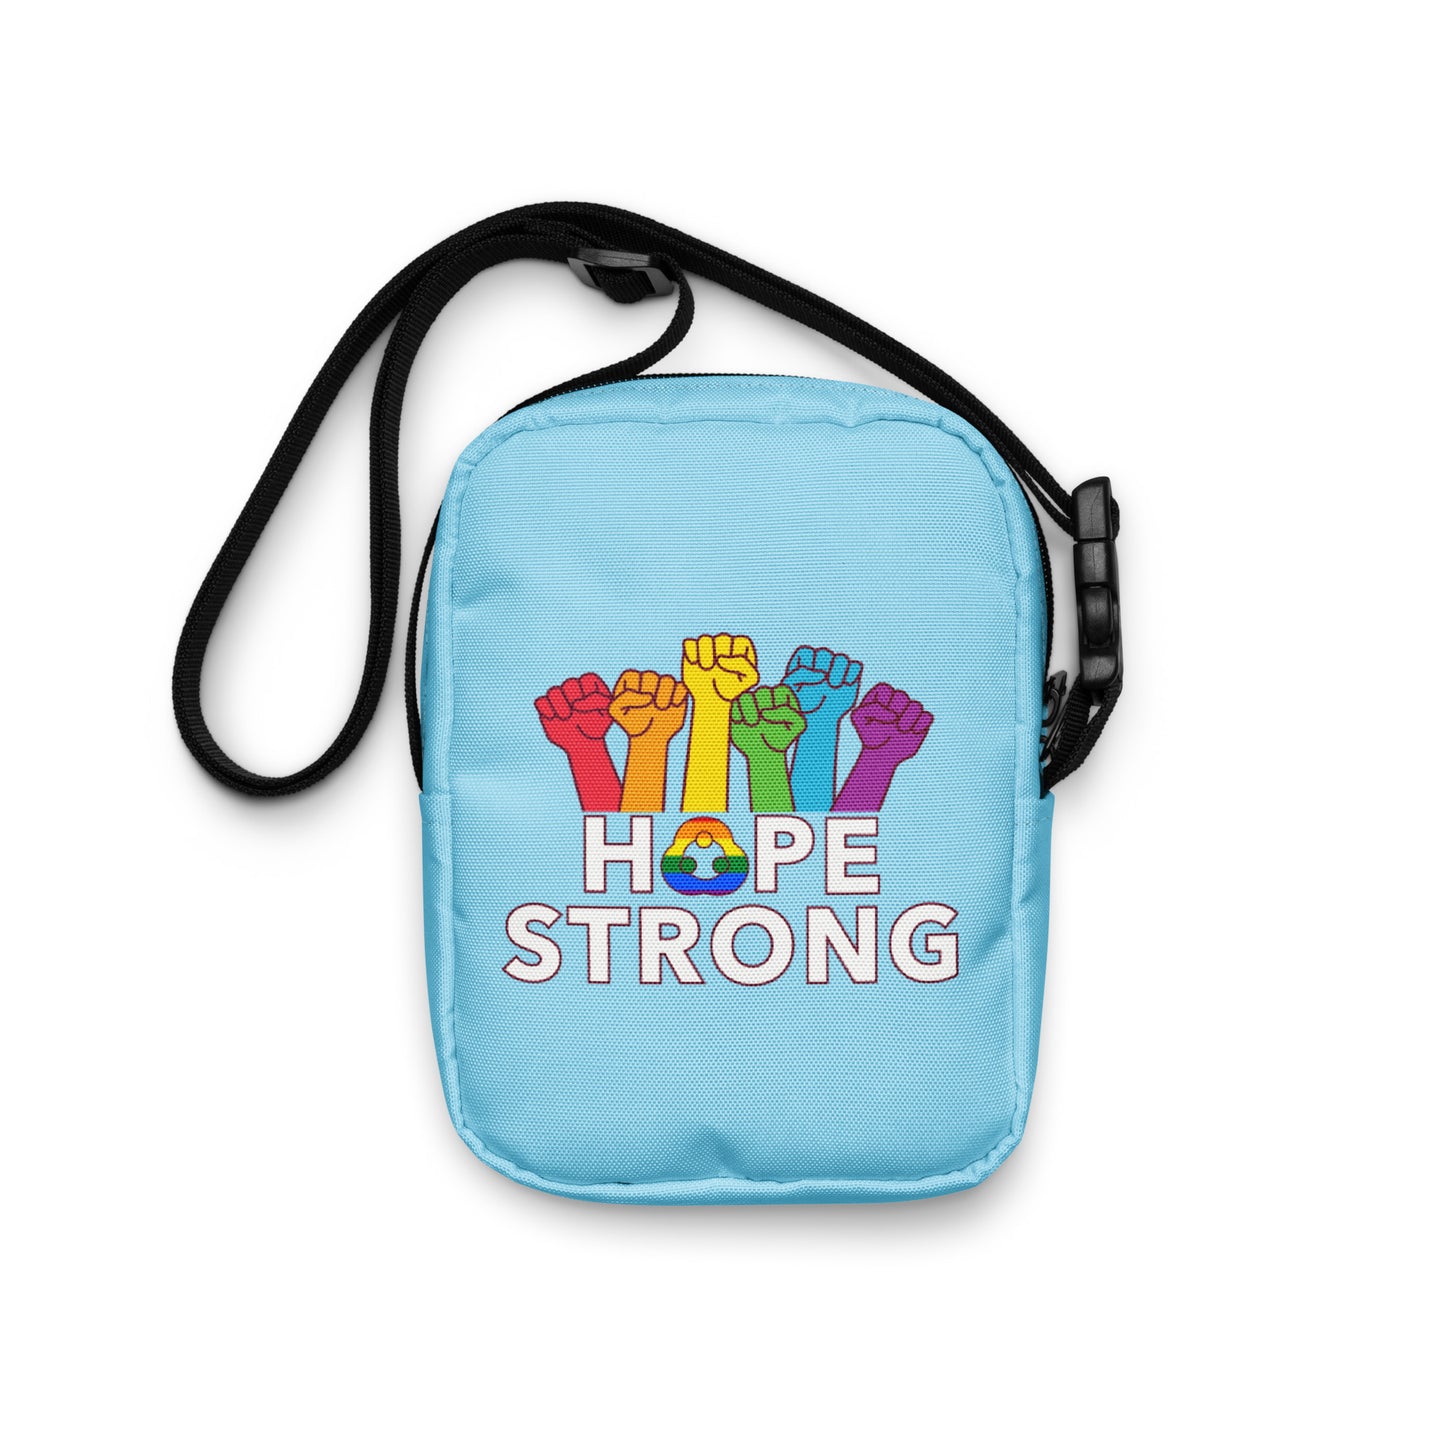 HOPE Strong Shoulder Bag